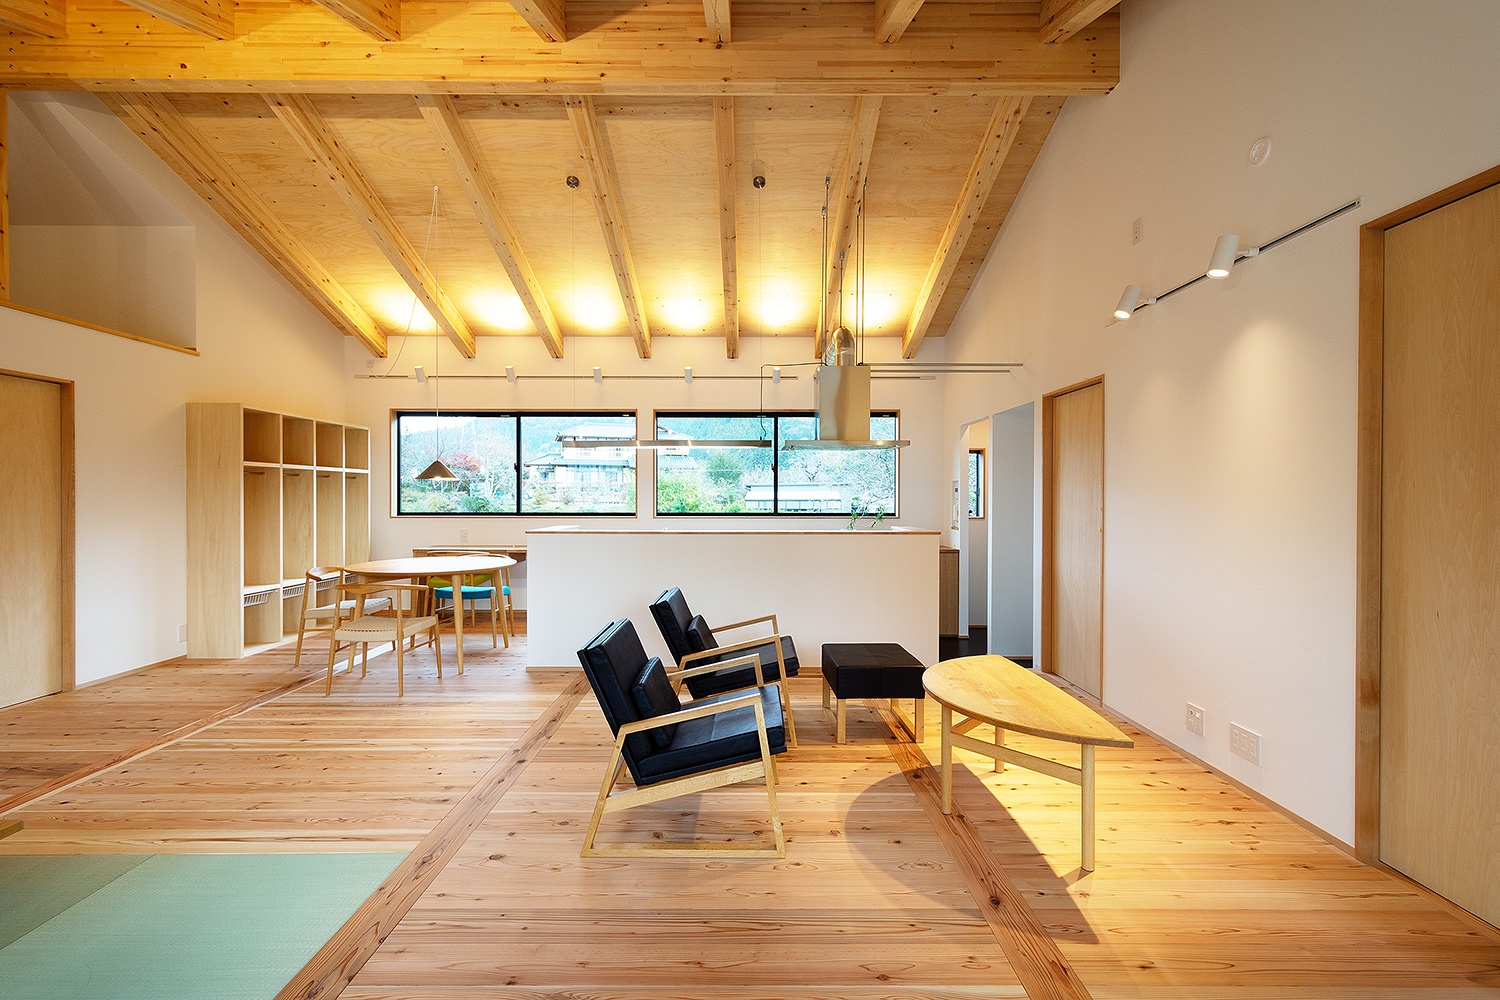 構造用合板と梁の現しがおしゃれな勾配天井いレザー張りのオリジナルの無垢の家具。